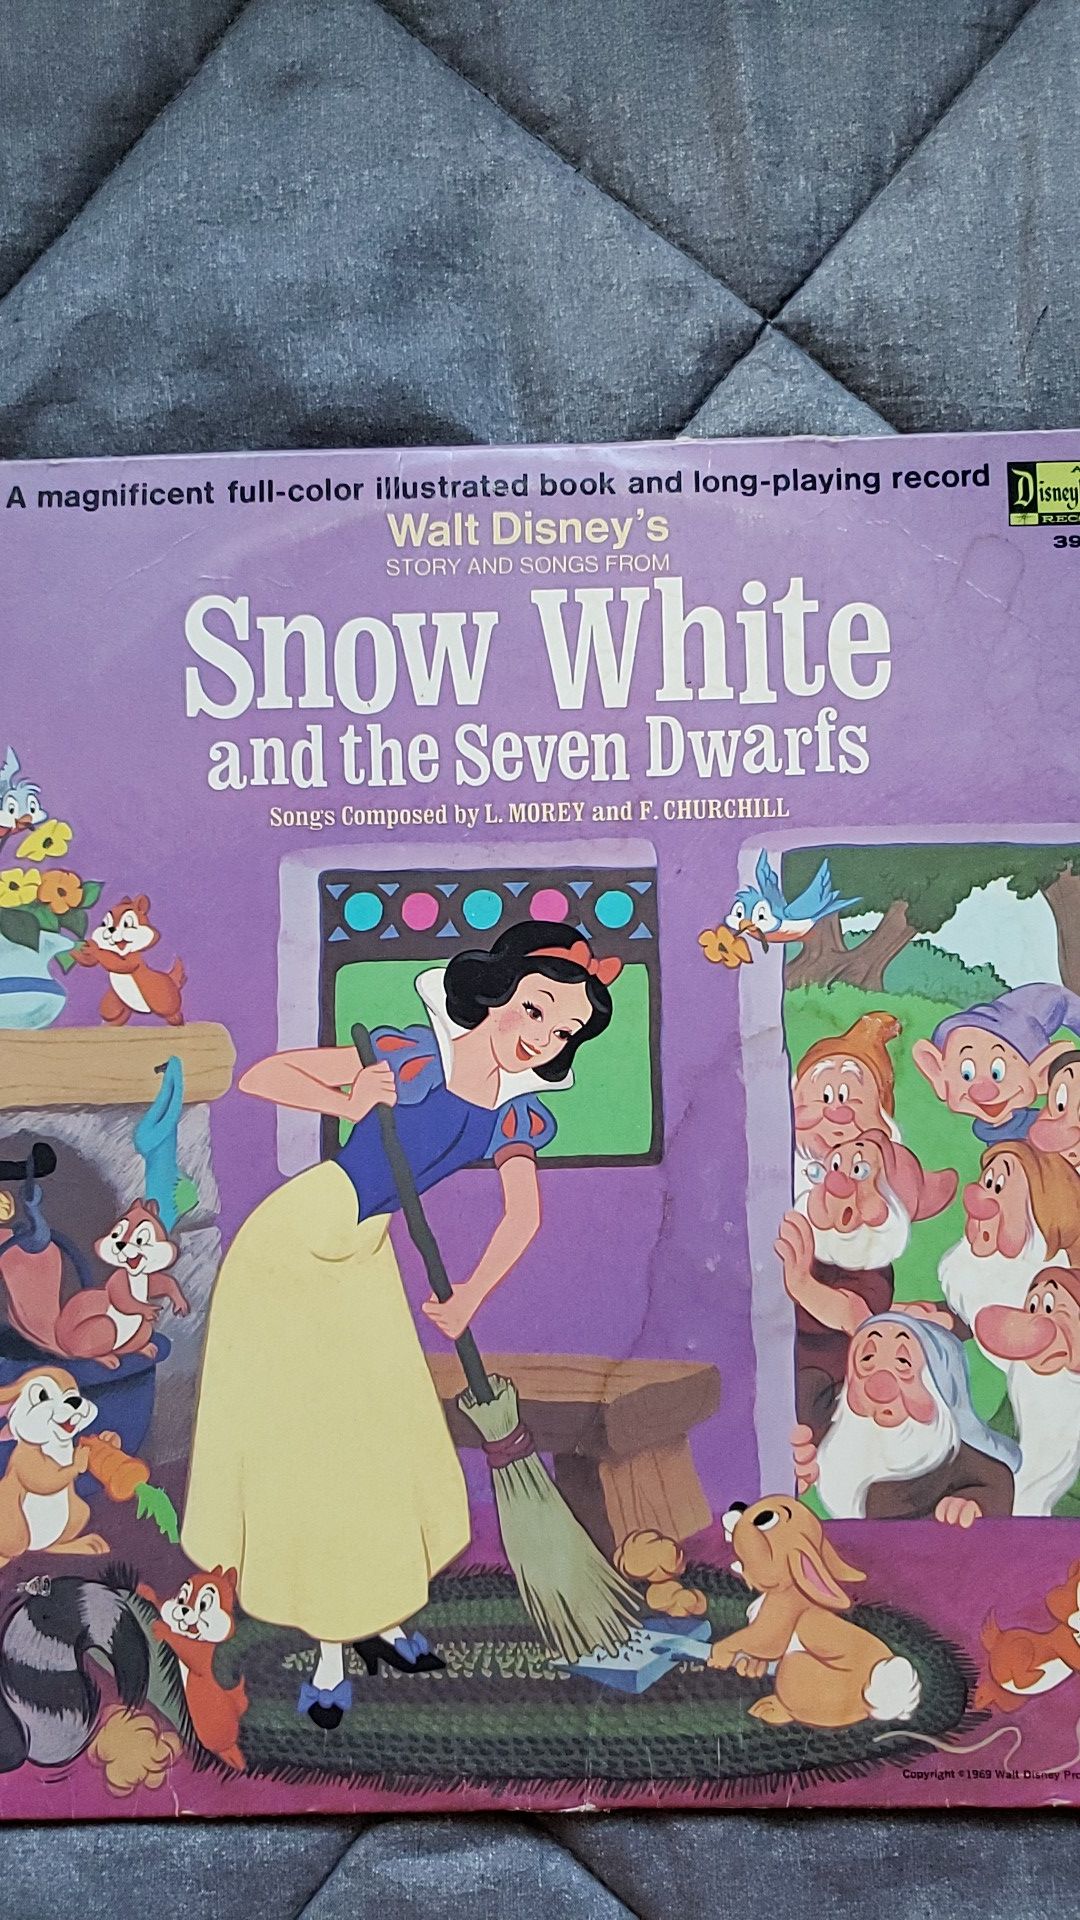 Disney's 1969 Snow White